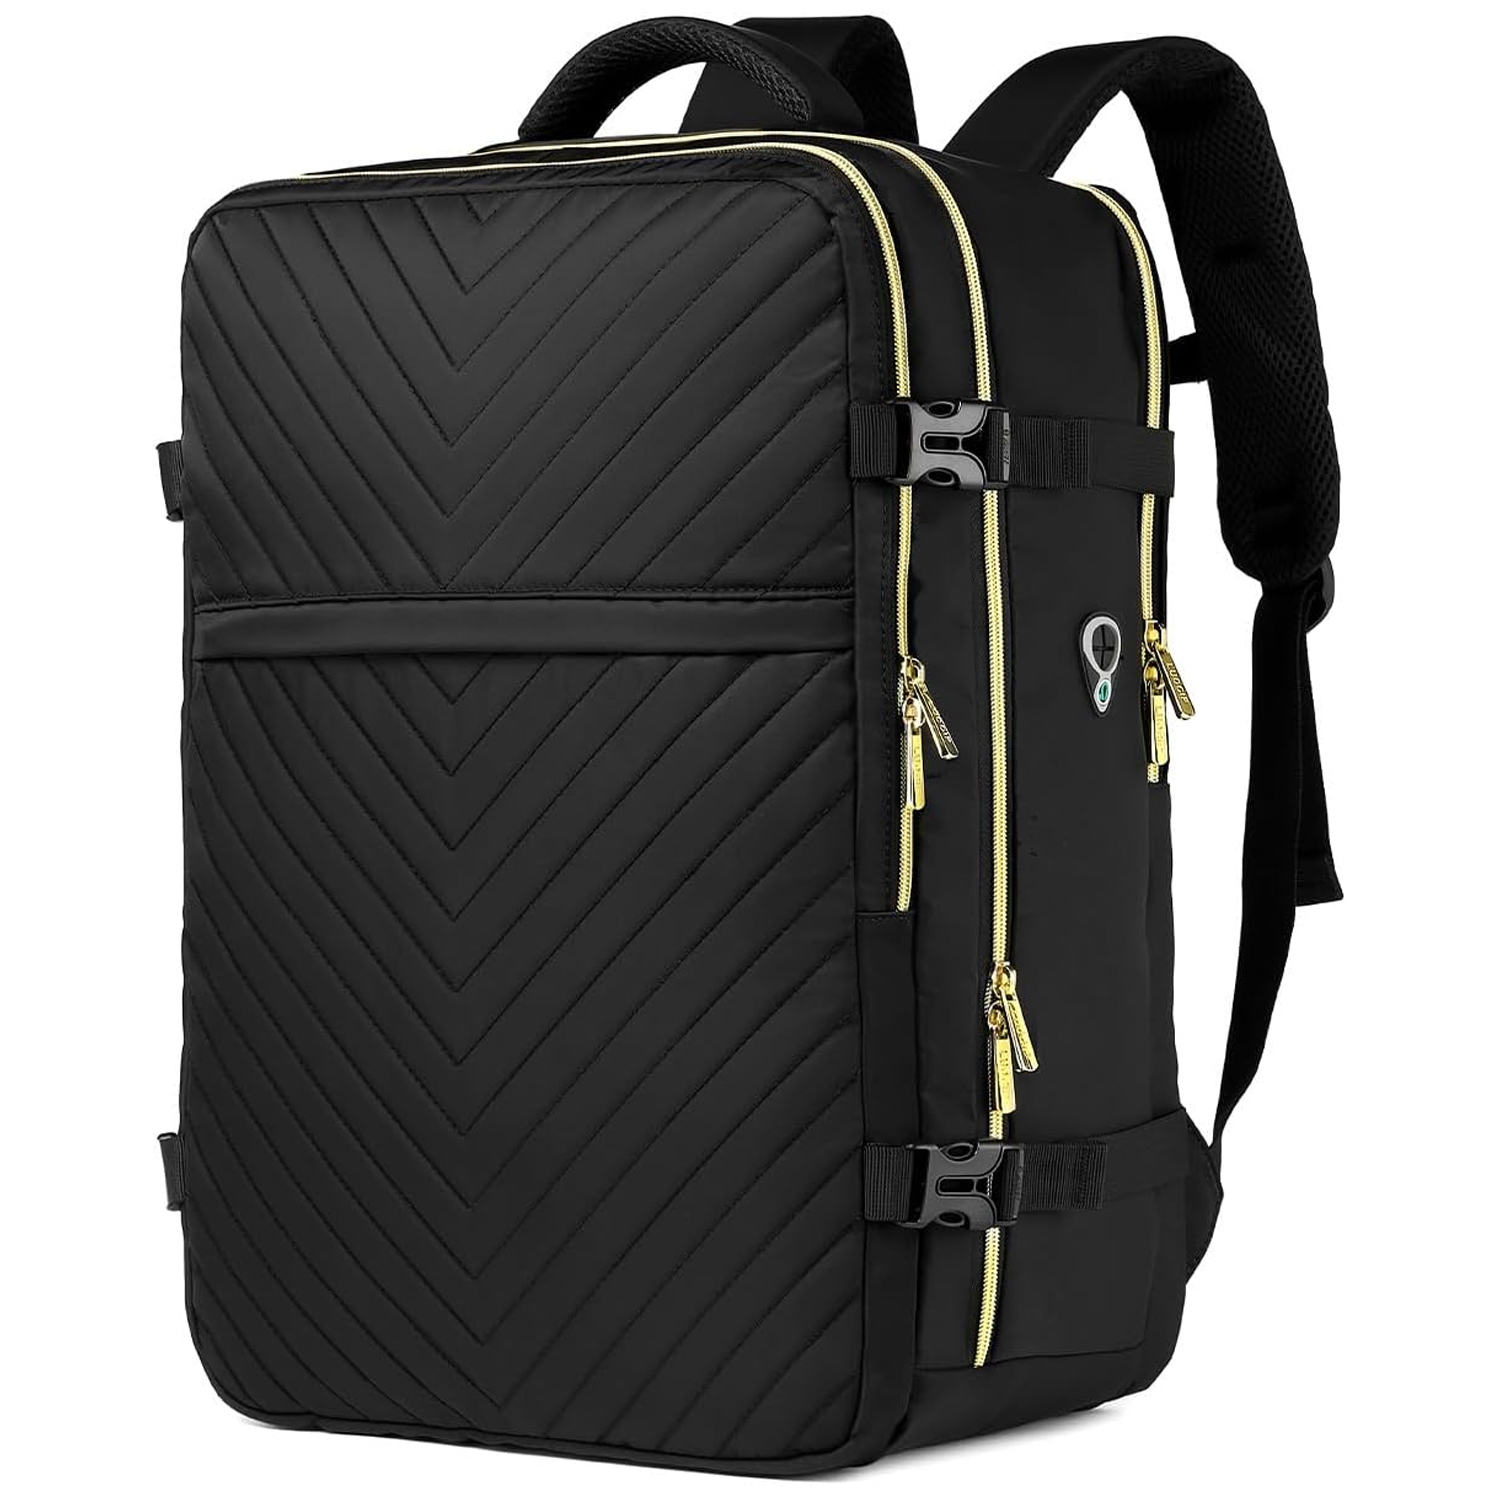 Customized Multi-Function Backpack Nylon Luggage Bag